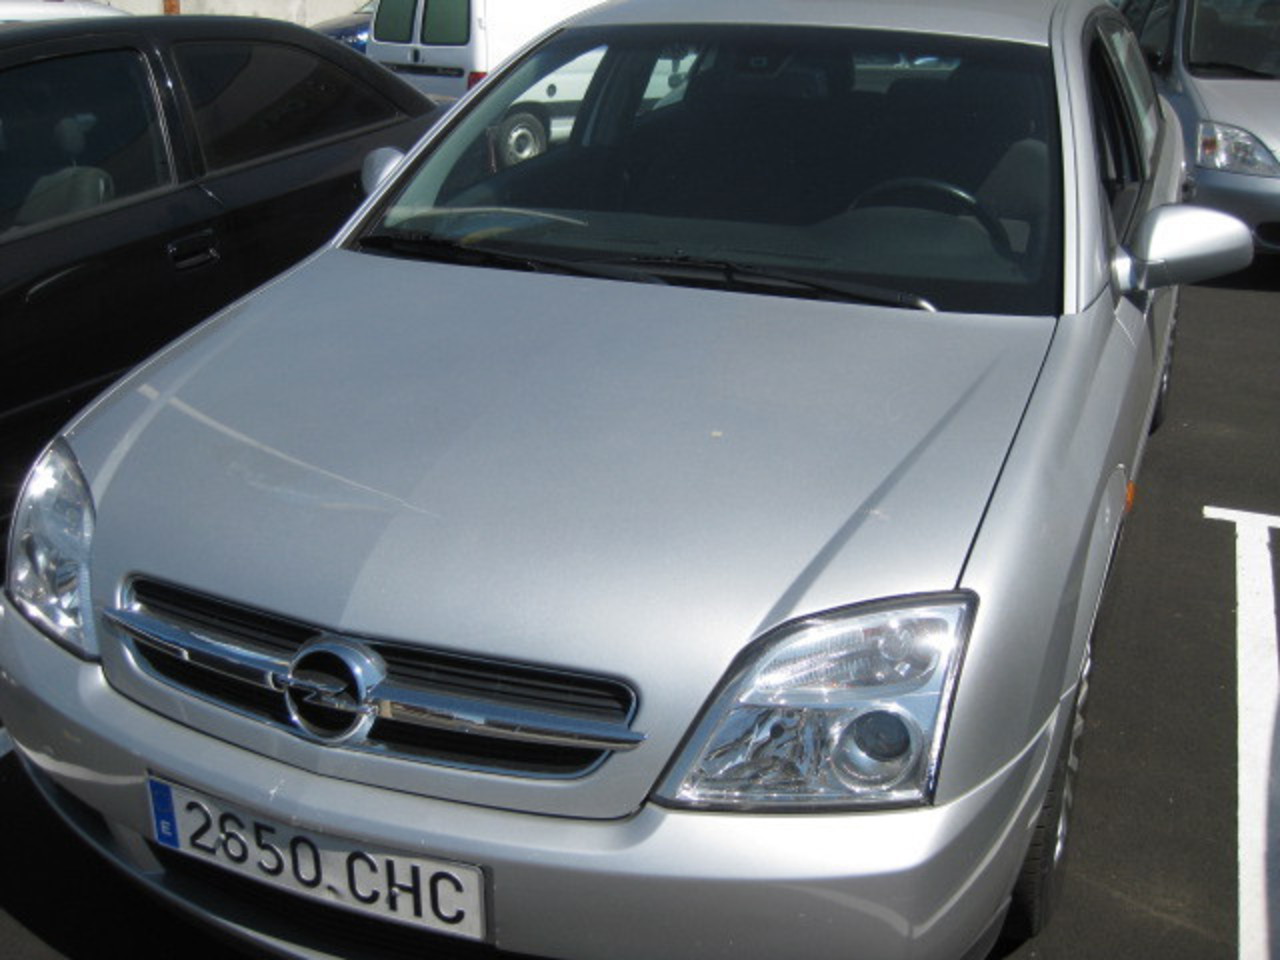 2003 Opel Vectra 2.2. 5 500 â' Voir plus Mi: 103 000 km. Espagne Salamanque